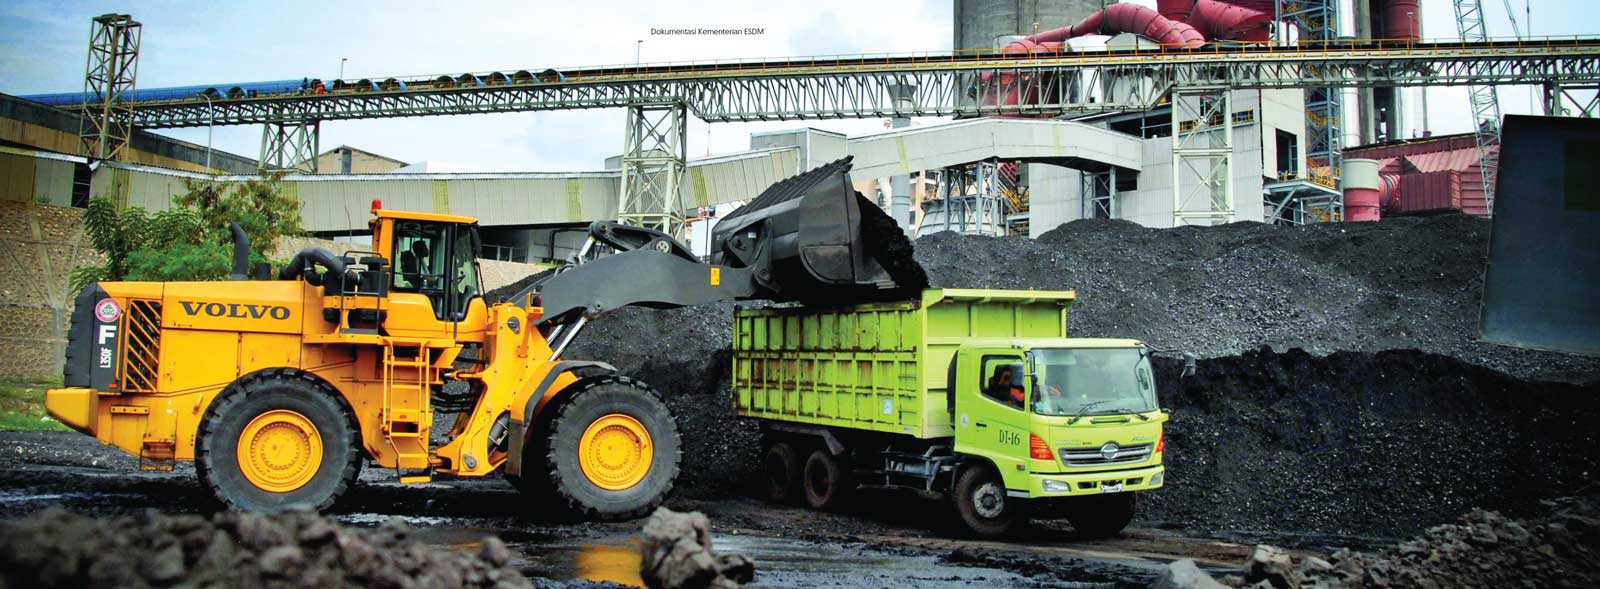 Indonesia Mining Gabungan